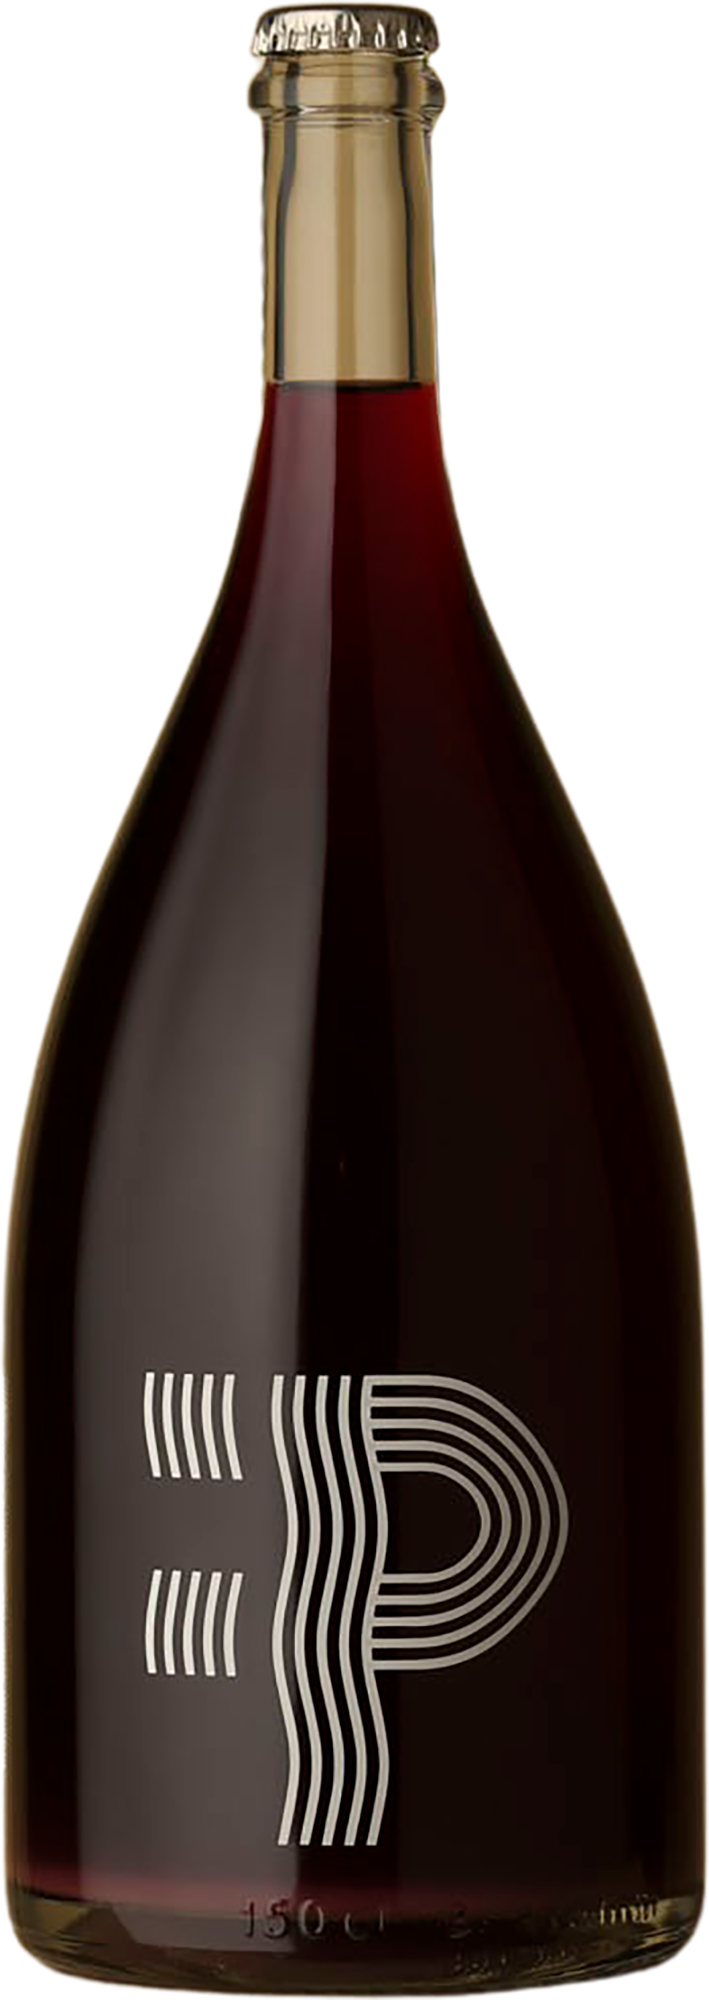 Lansdowne - Super PNCH 1500mL Pét Nat 2021 Sparkling Wine